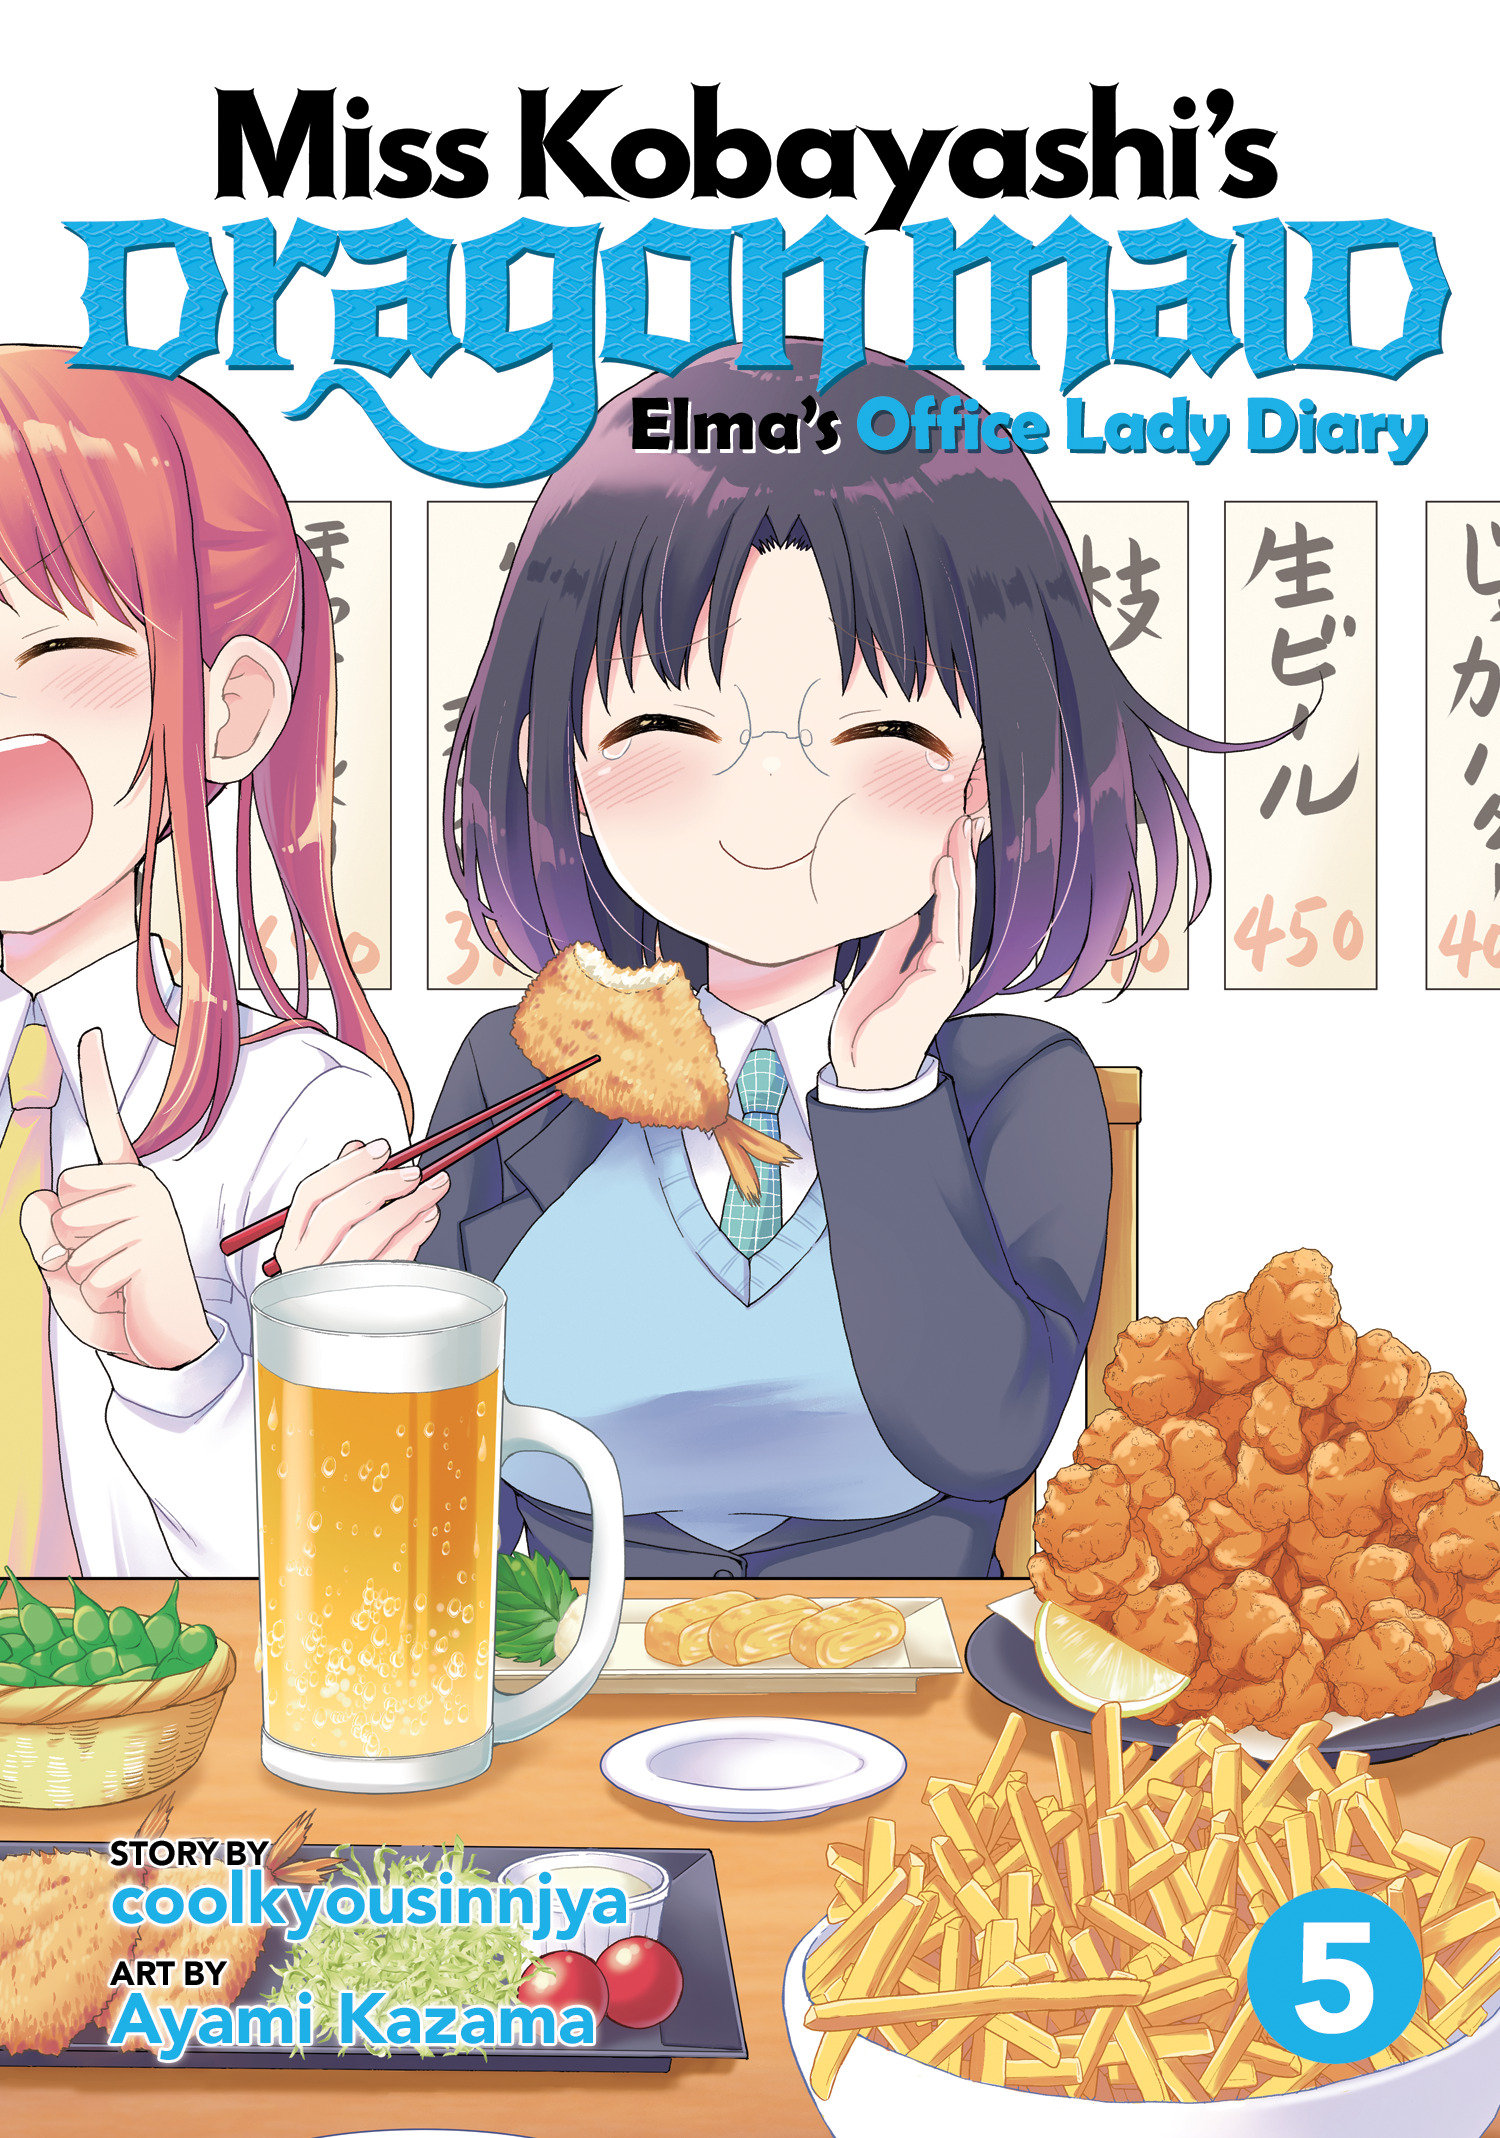 Miss Kobayashi's Dragon Maid Elma Diary Manga Volume 5